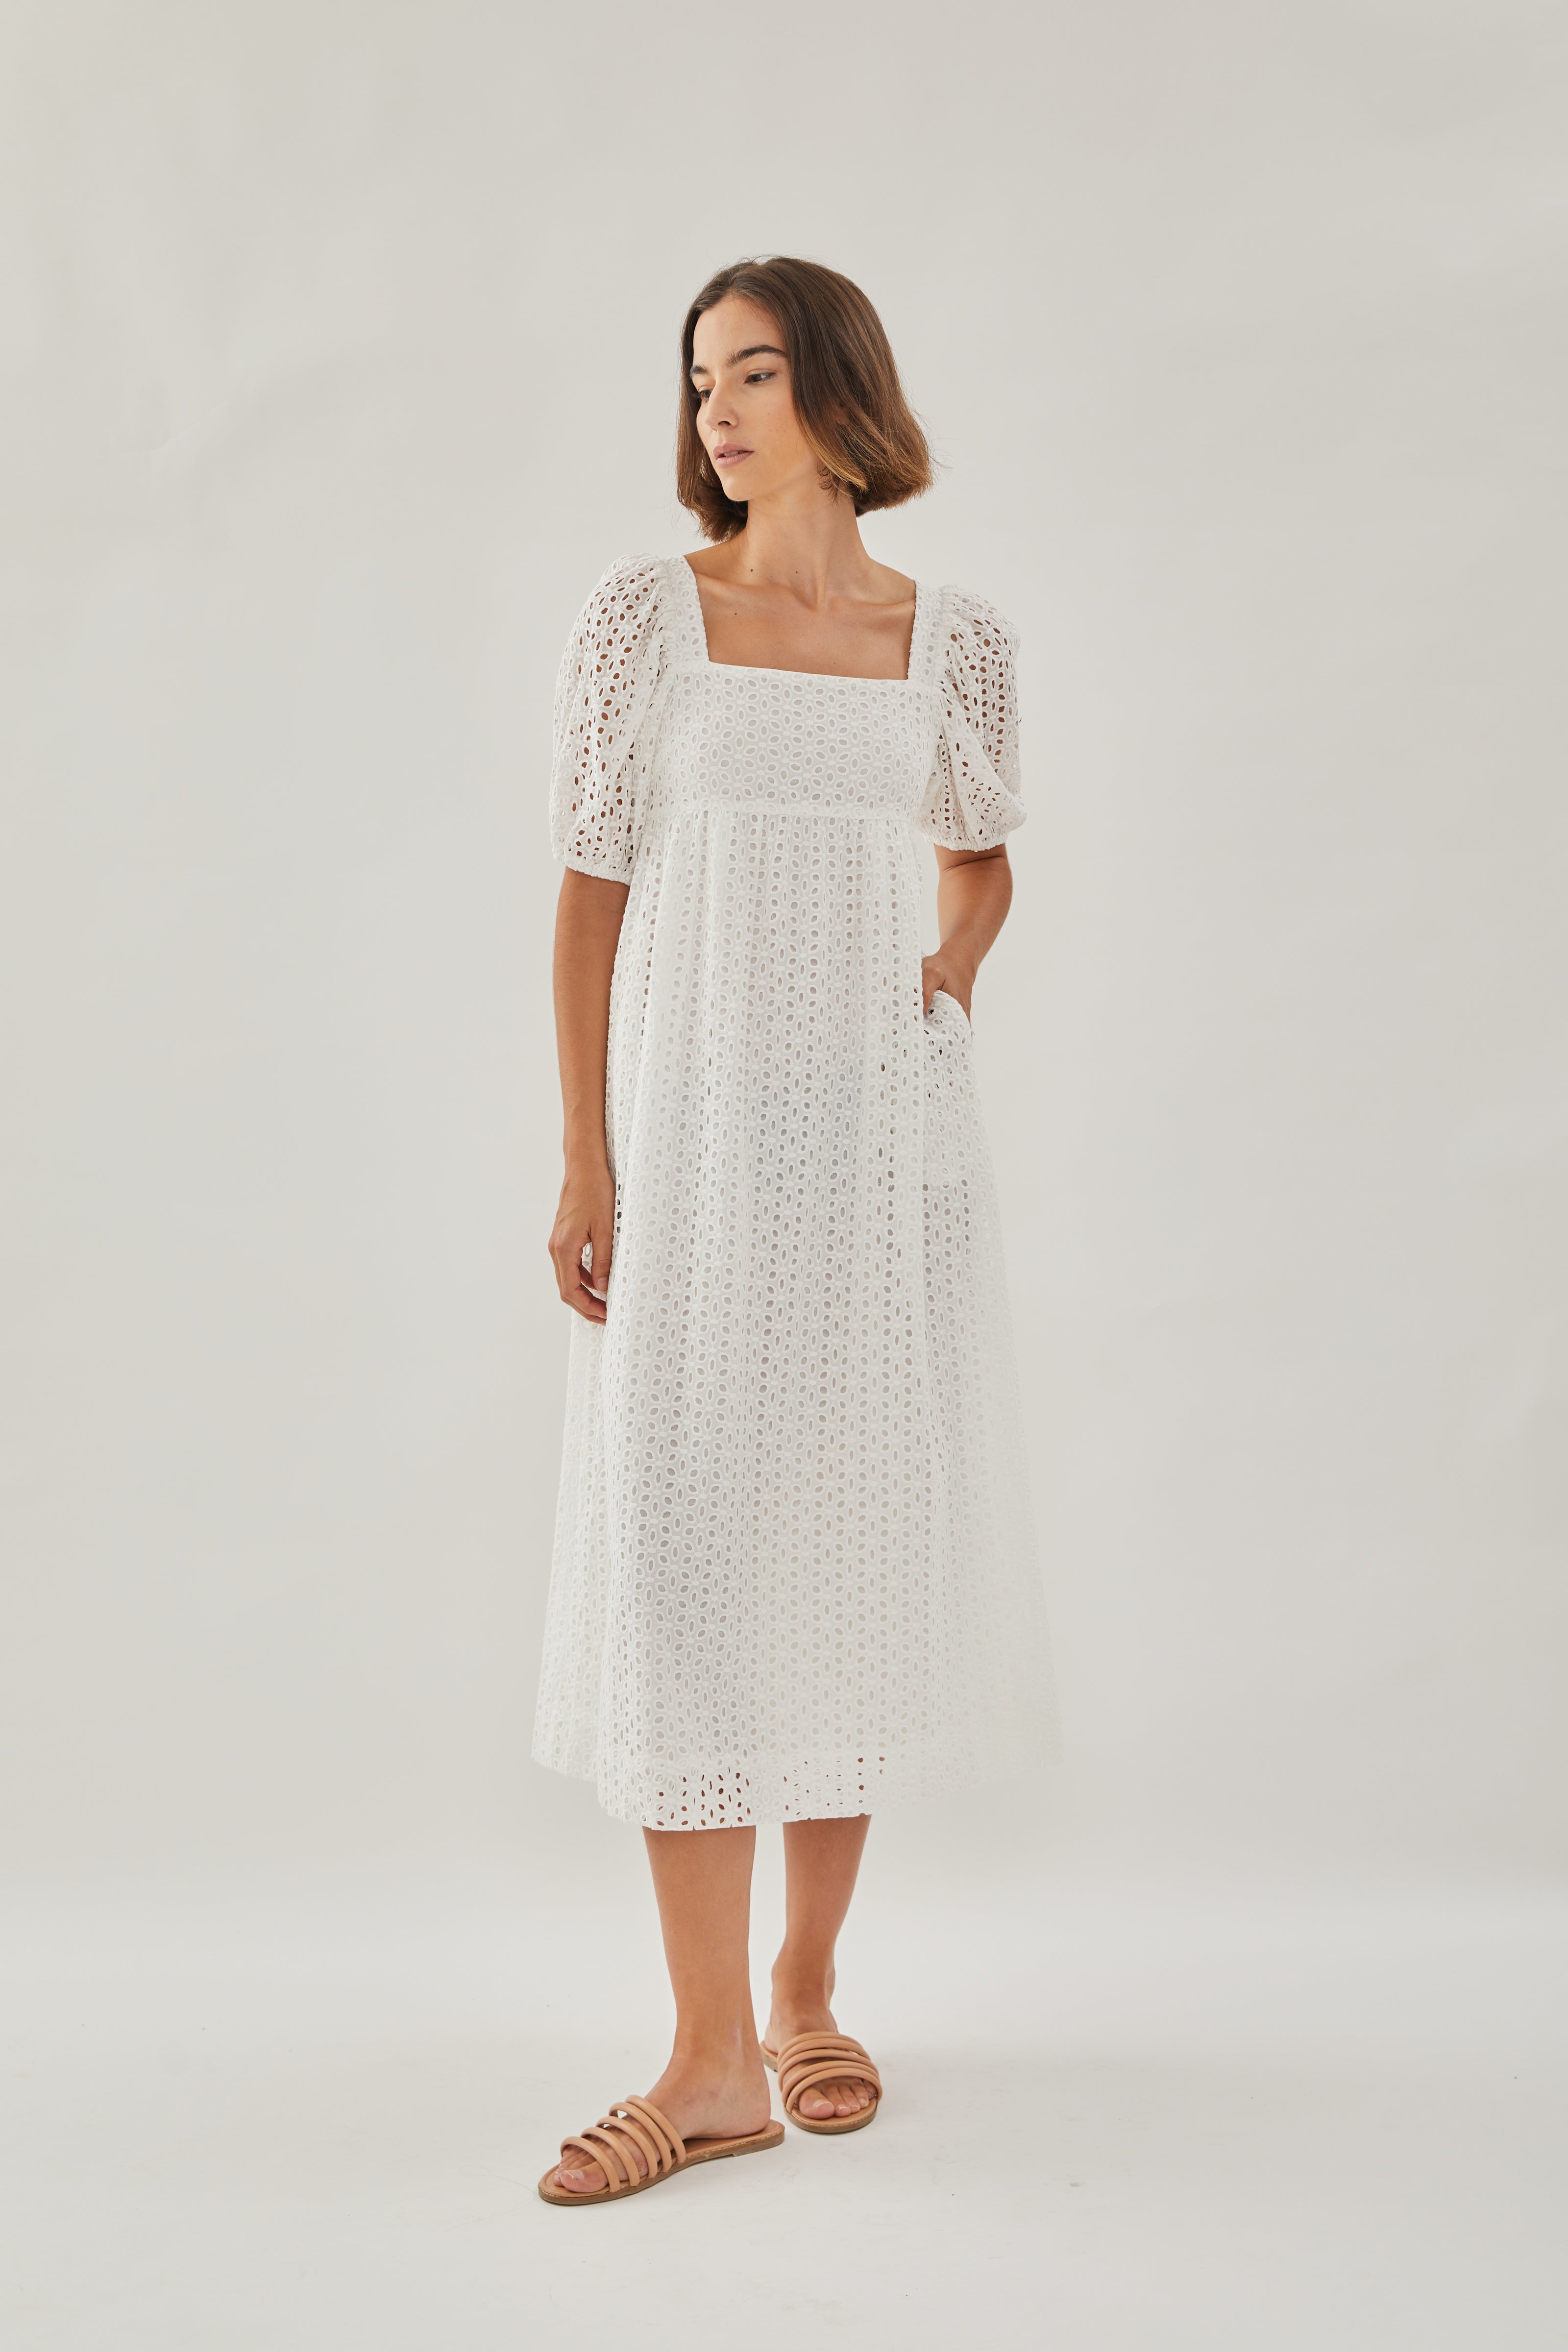 Broderie Midi Dress in White